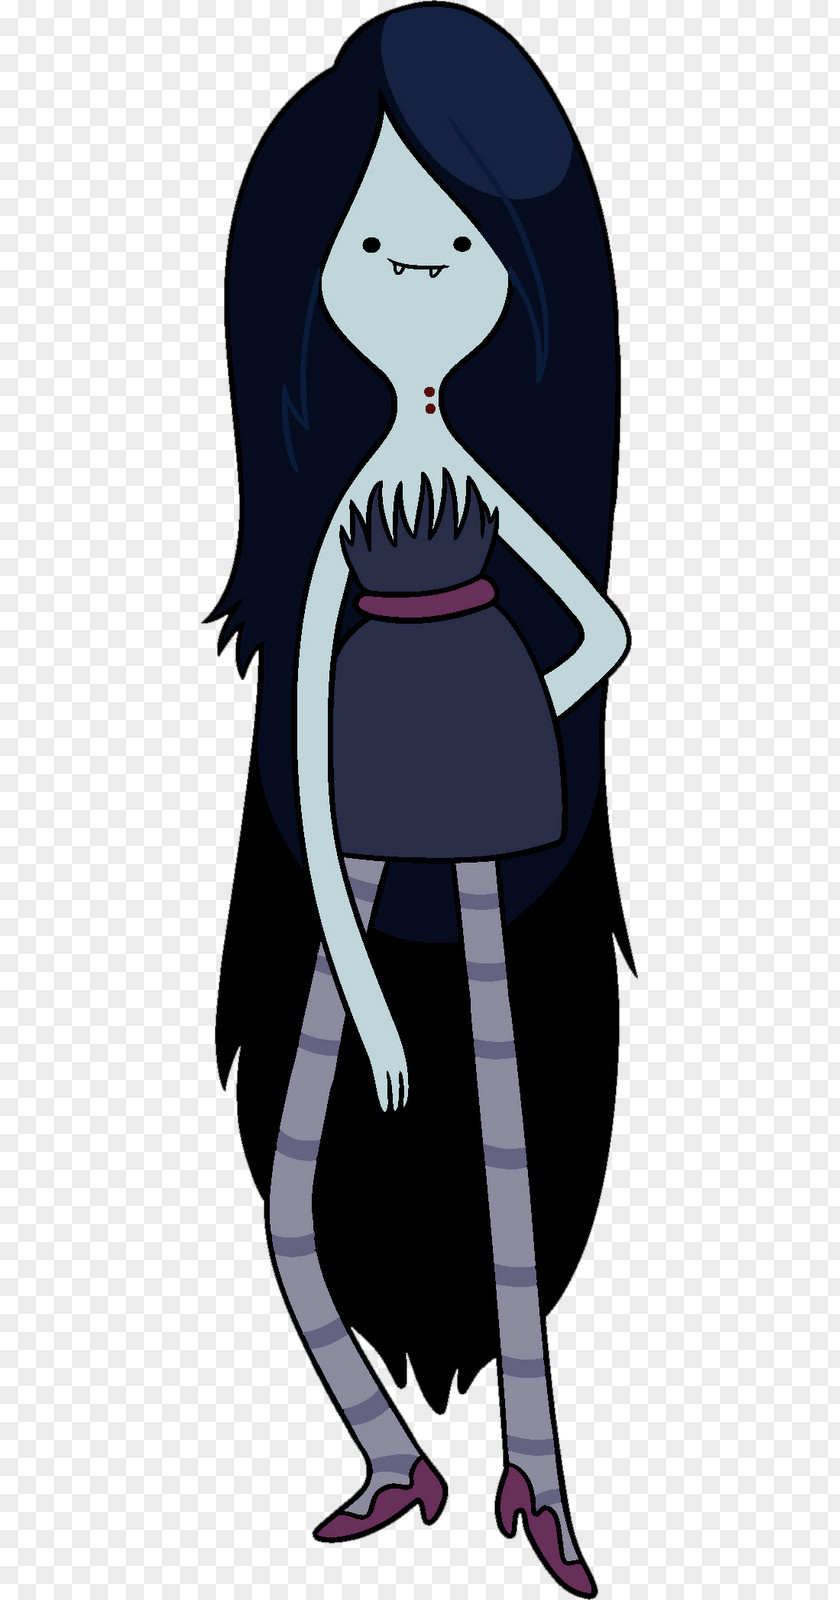 Finn The Human Marceline Vampire Queen Princess Bubblegum Flame Cartoon Network PNG